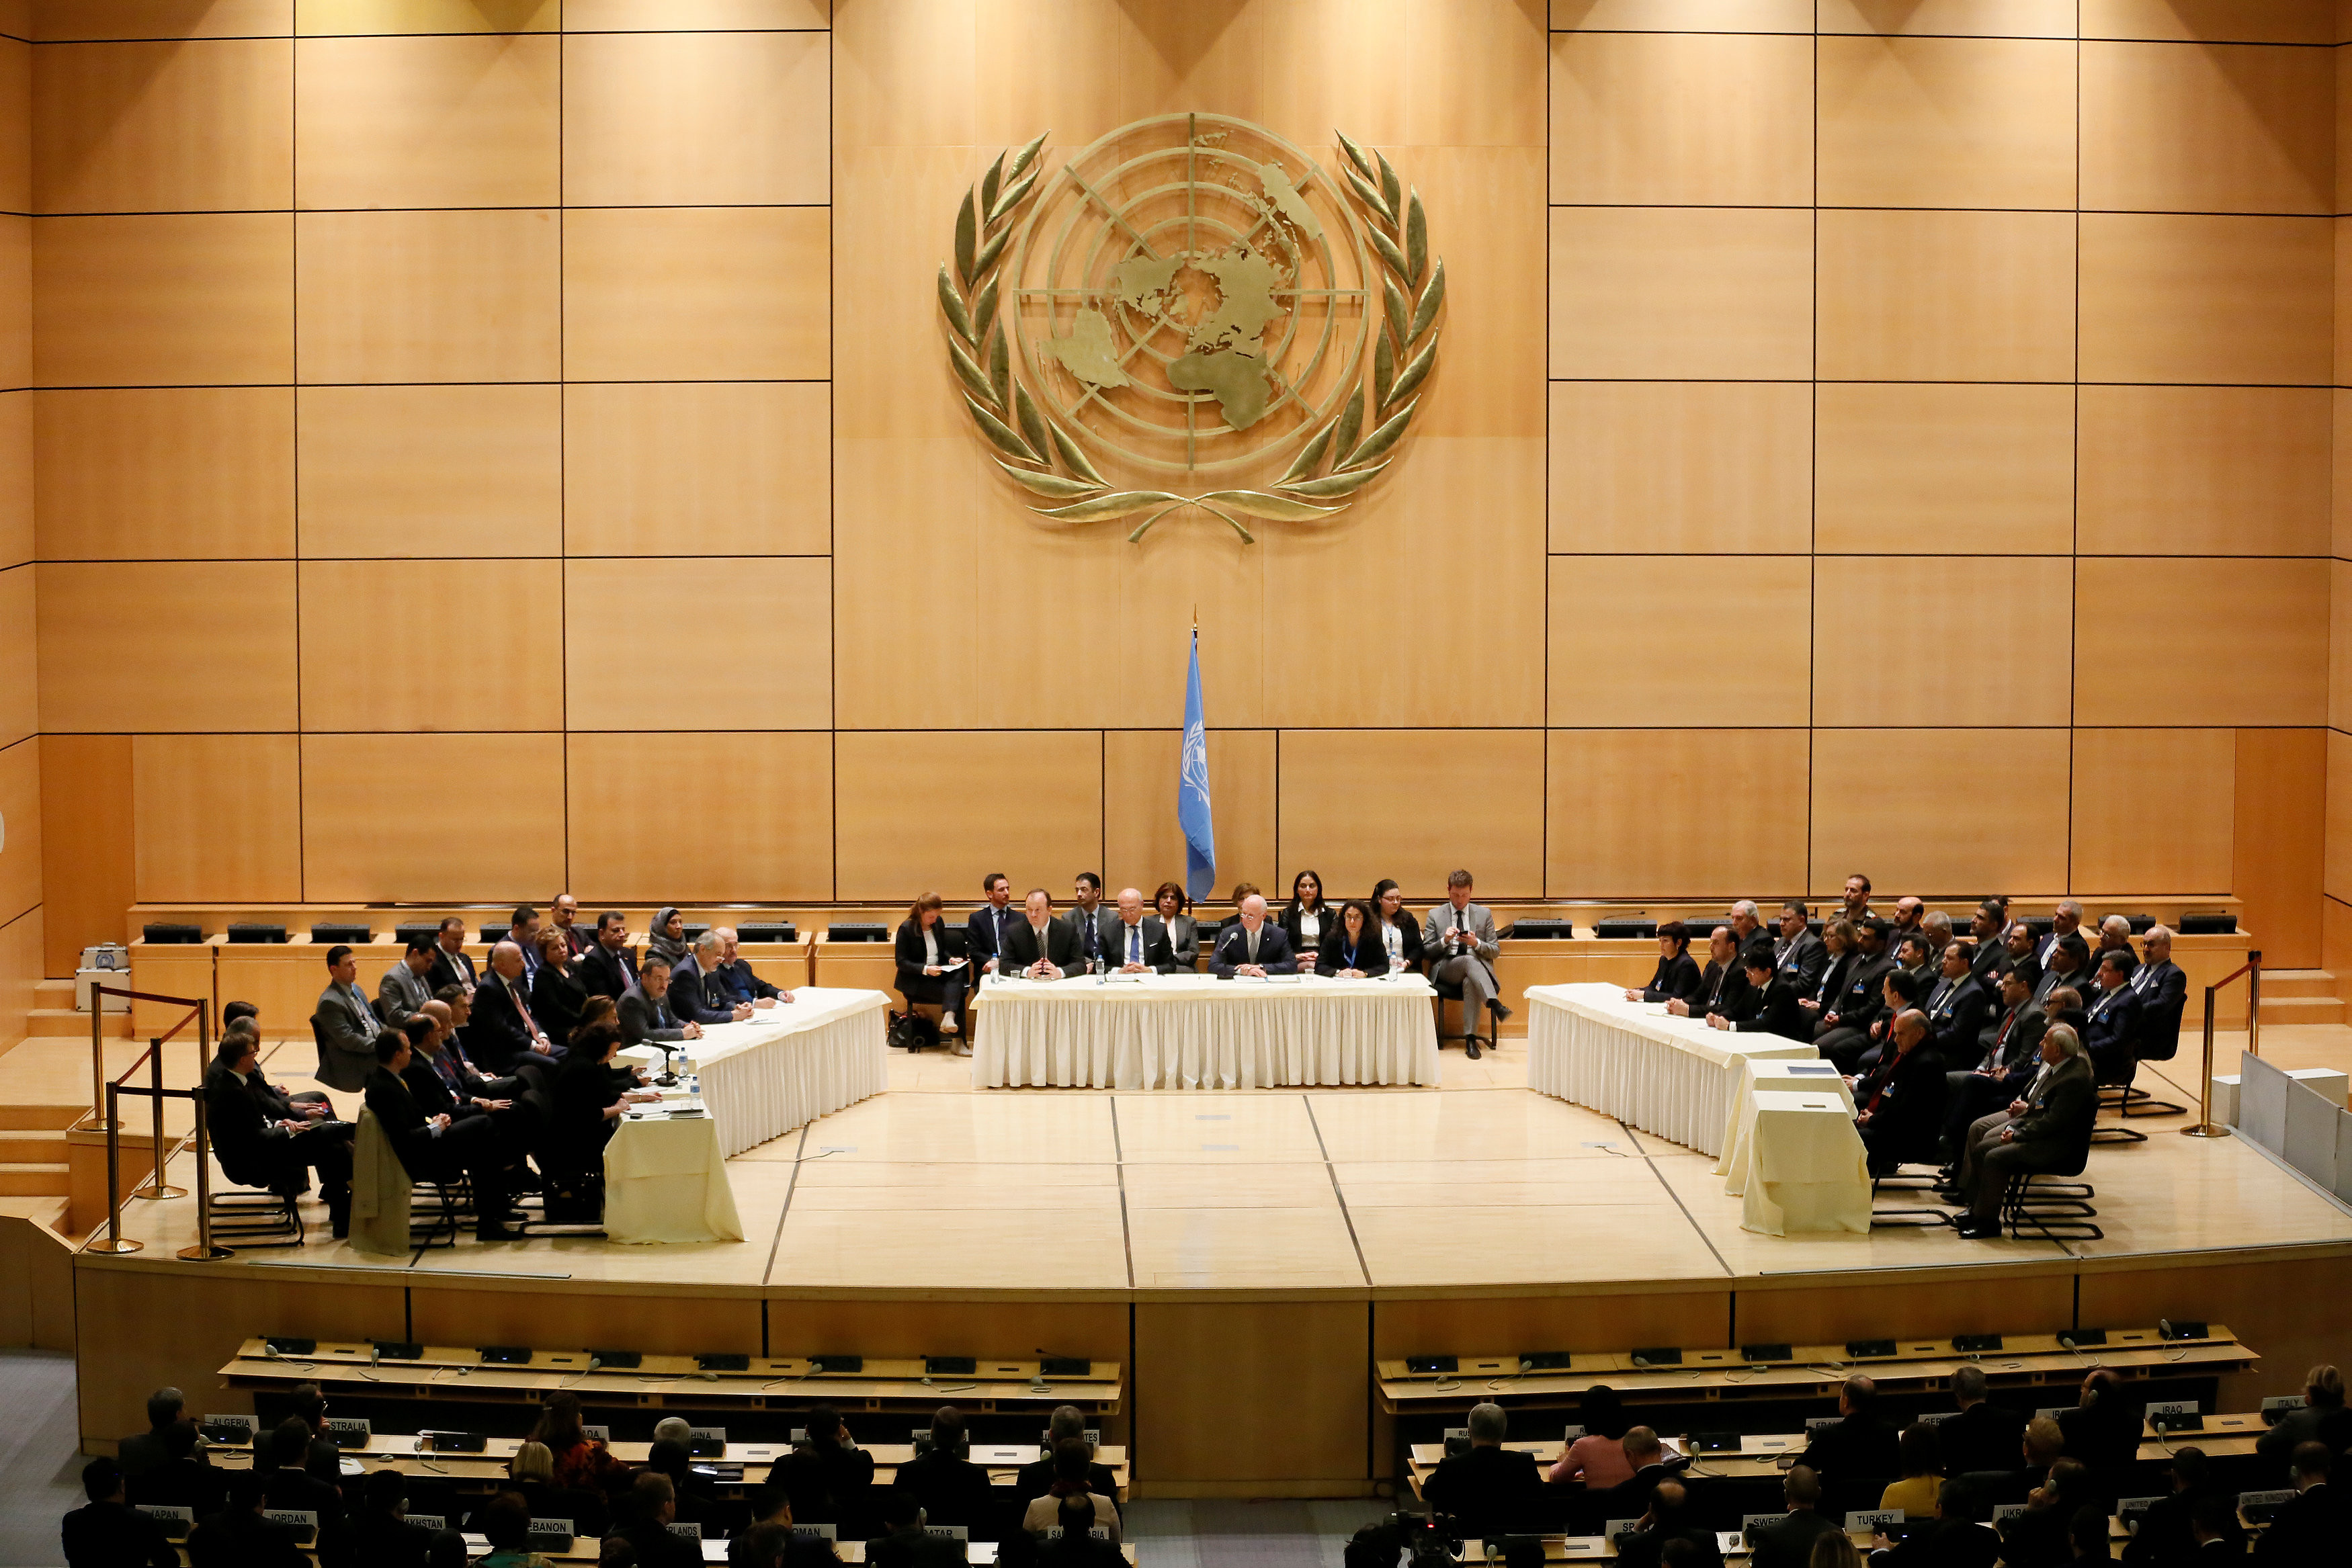 Части оон. ООН совет безопасности Женева. Военно-штабной комитет ООН. Переговоры Генеральная Ассамблея ООН. Офис ООН В Женеве.